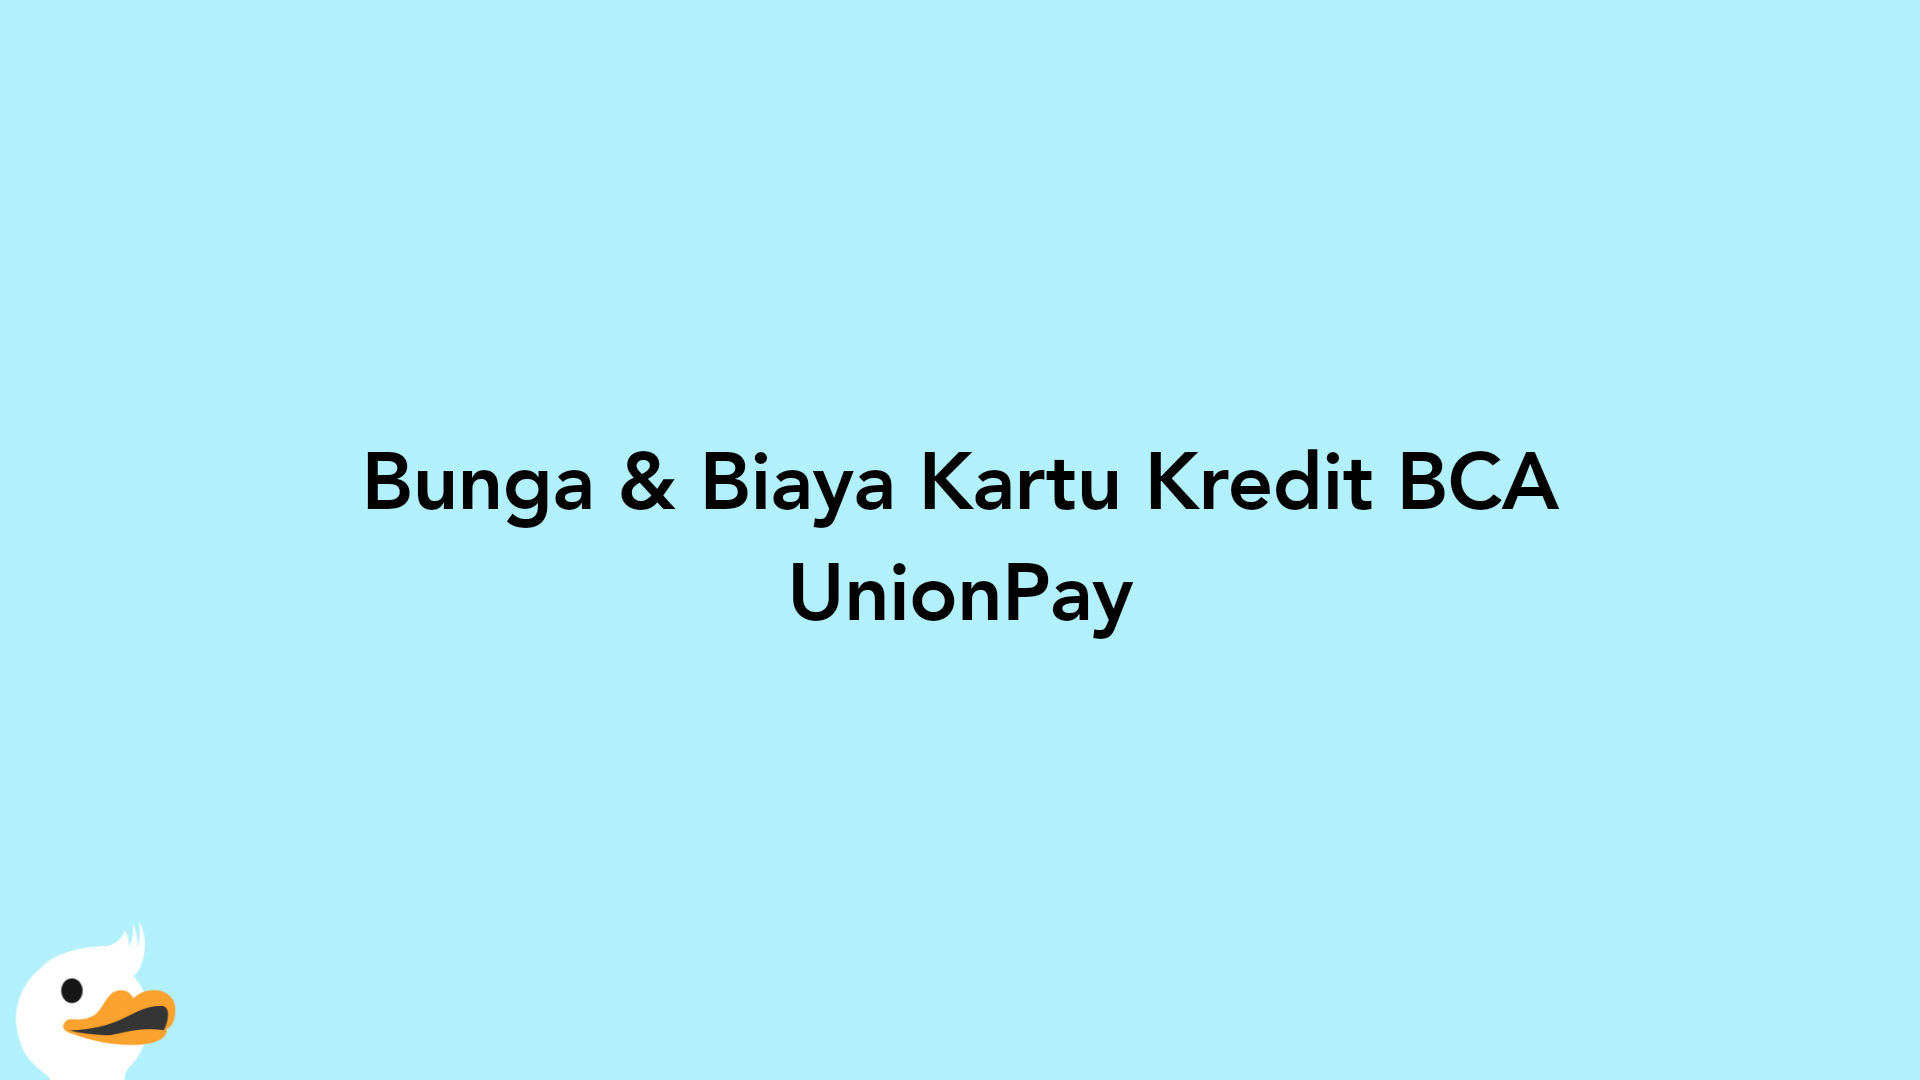 Bunga & Biaya Kartu Kredit BCA UnionPay